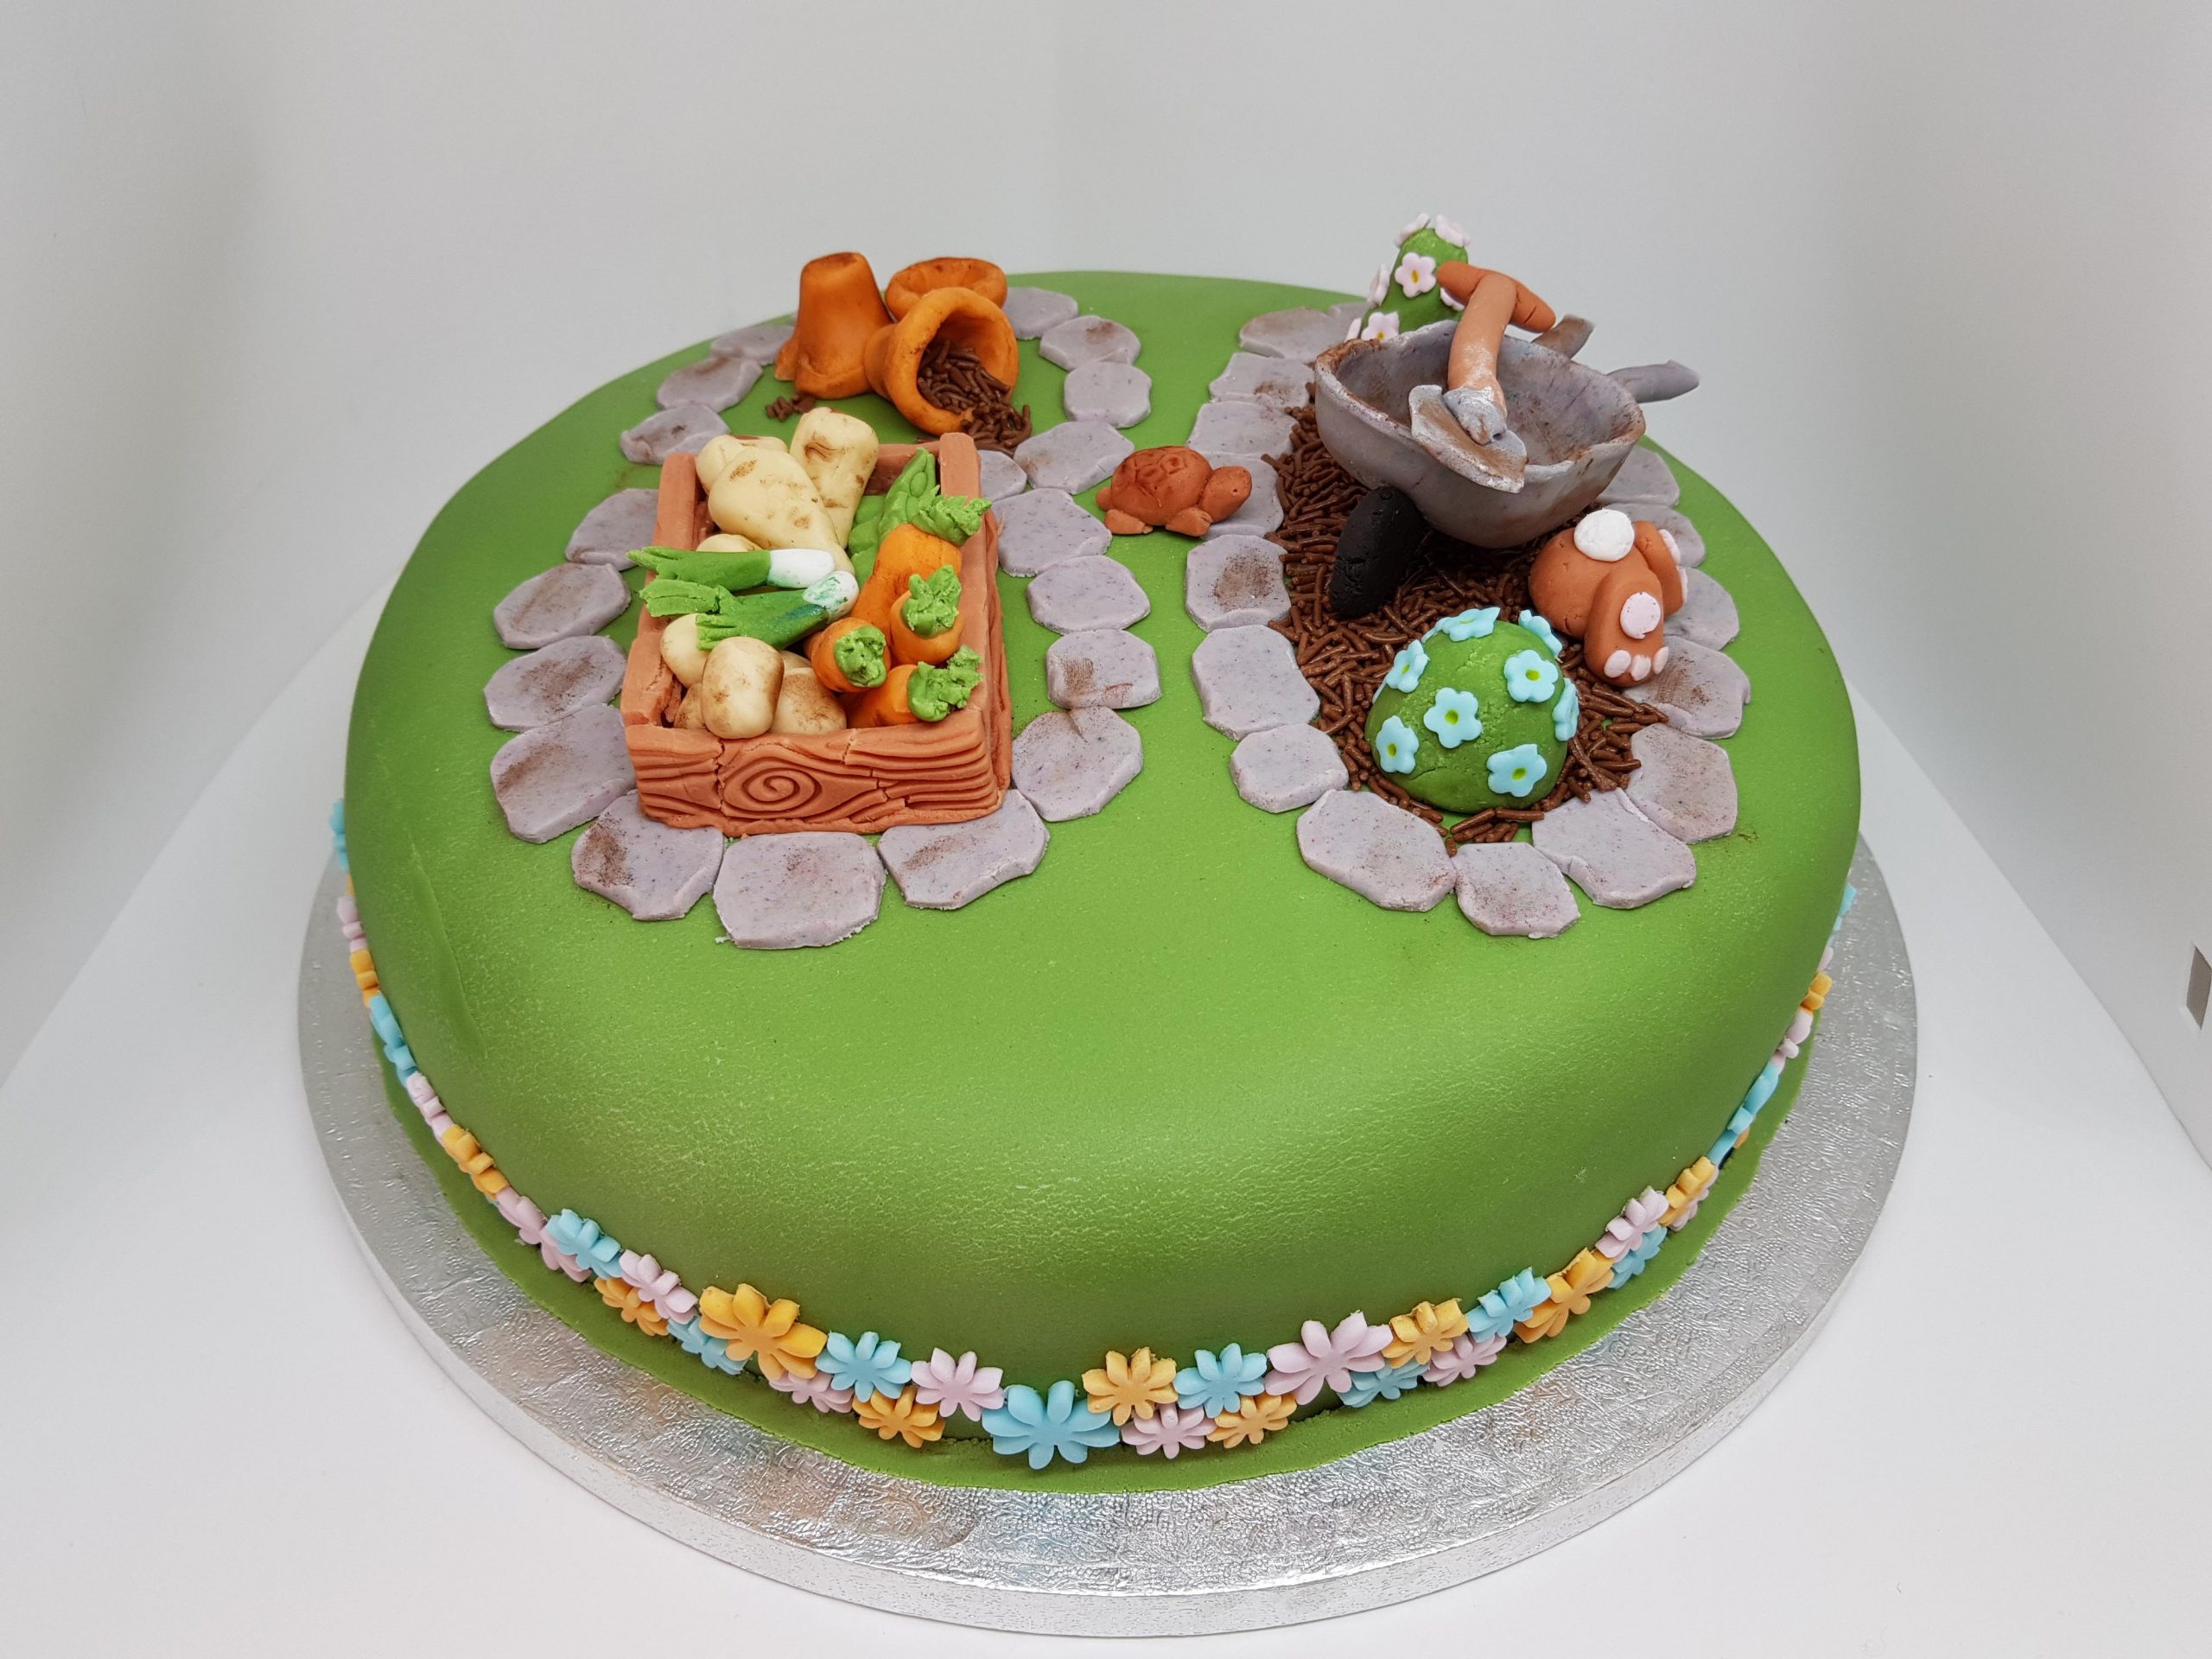  کیک های تولد با تم سبز